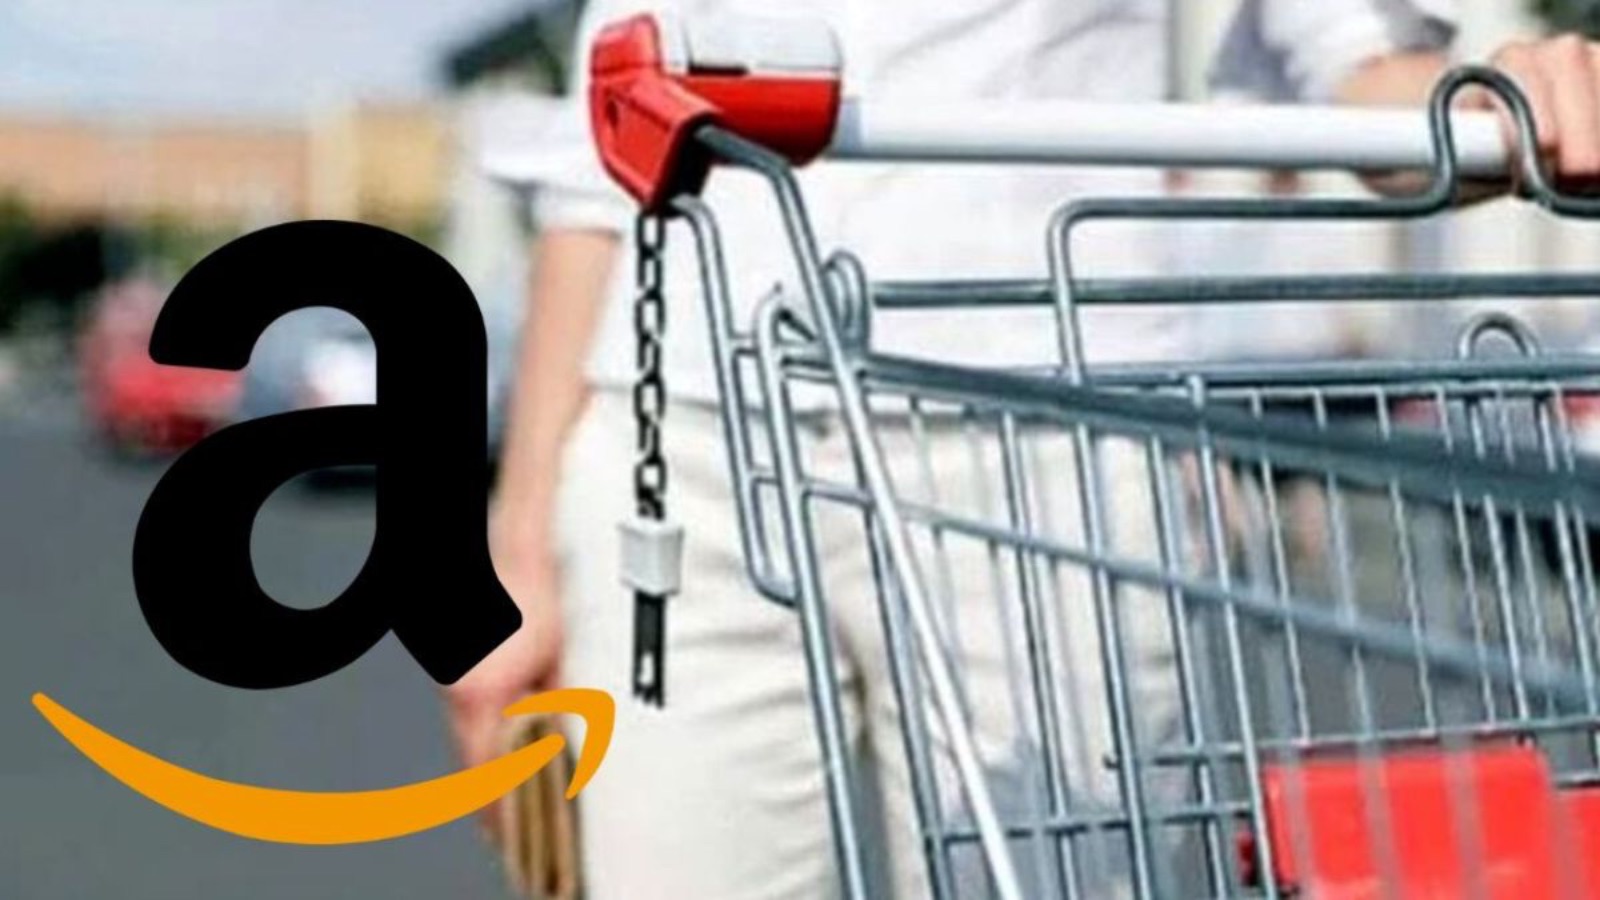 Amazon, incredibili offerte NOTTURNE a partire da 10 euro